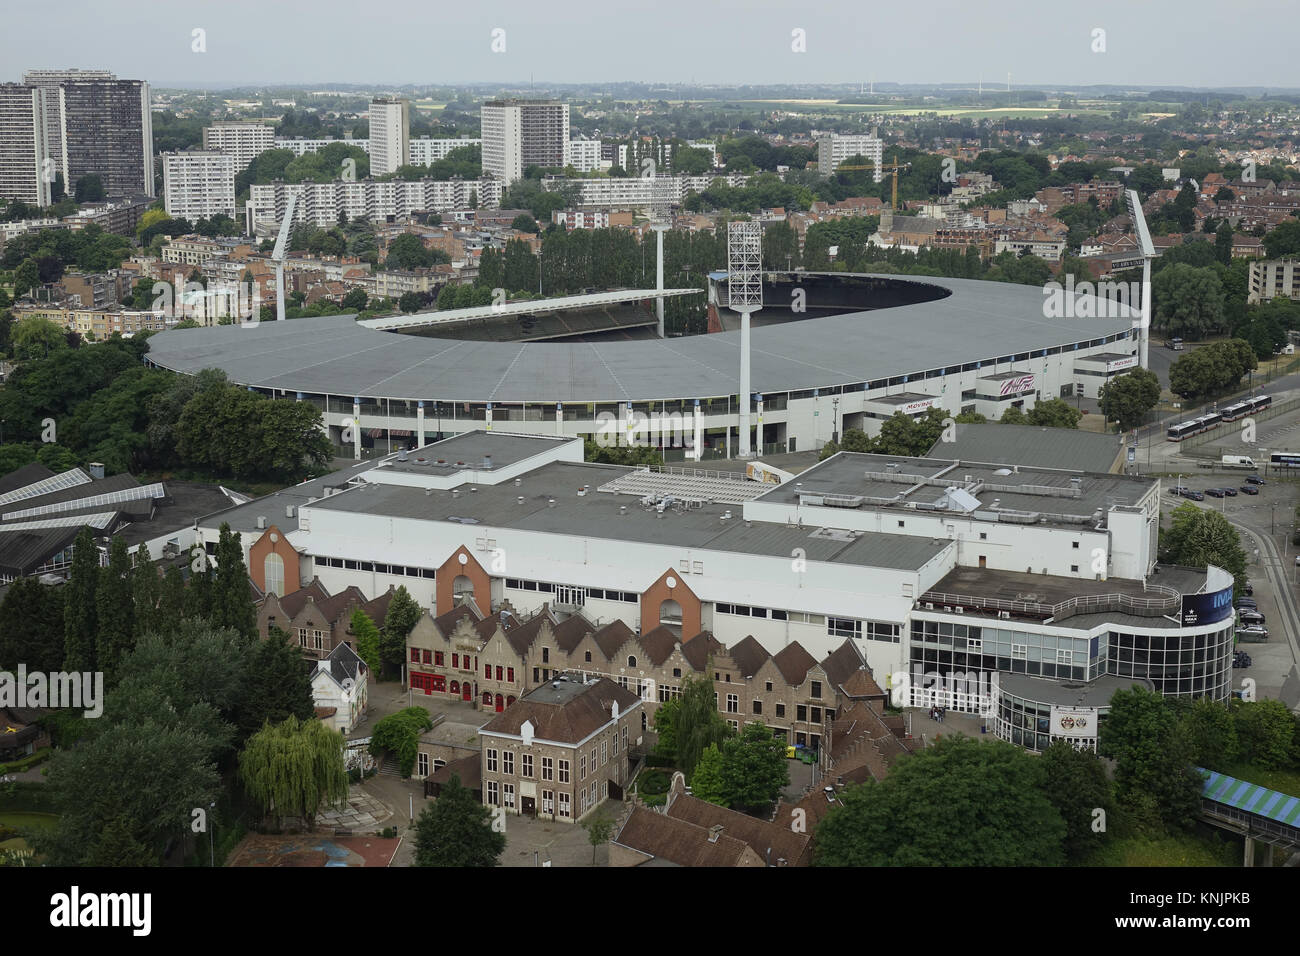 Una vista da Atomium di King Baudouin Stadium nella capitale belga Bruxelles, raffigurato su 26.06.2017. La King Baudouin Stadium è uno stadio di calcio con pista atletica leggera. Fino al 1995 è stato chiamato l'Heysel Stadium ed è stato convertito in un multi-function arena nella metà degli anni novanta. È in Belgio, il più grande stadio, con circa 50.000 posti a sedere ed è stato uno degli stadi utilizzati per l'Euro 2000 campionati. Il Memorial Van Damme atletica, un evento che è parte della IAAF Diamond League, è stato anche tenuto qui dal 1977. Il 29 maggio 1985, l'Heysel Stadium è stato il sito di un incidente i Foto Stock